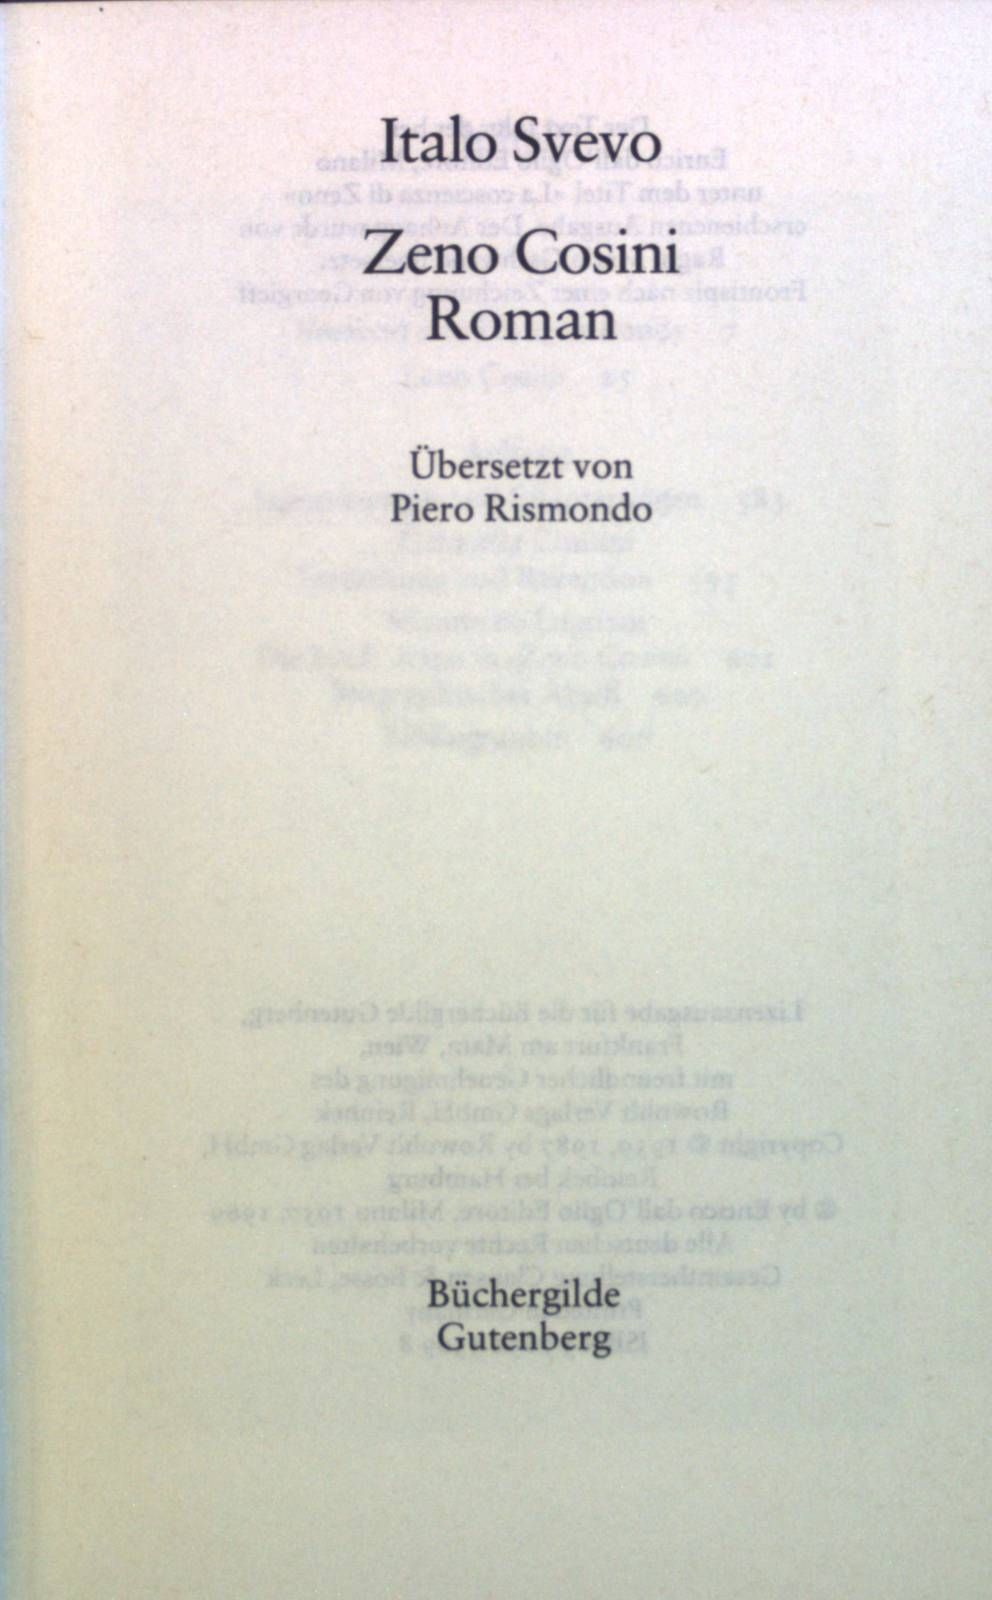 Zeno Cosini : Roman. Gesammelte Werke in Einzelausgaben. - Svevo, Italo, Claudio Magris Gabriella Contini u. a.